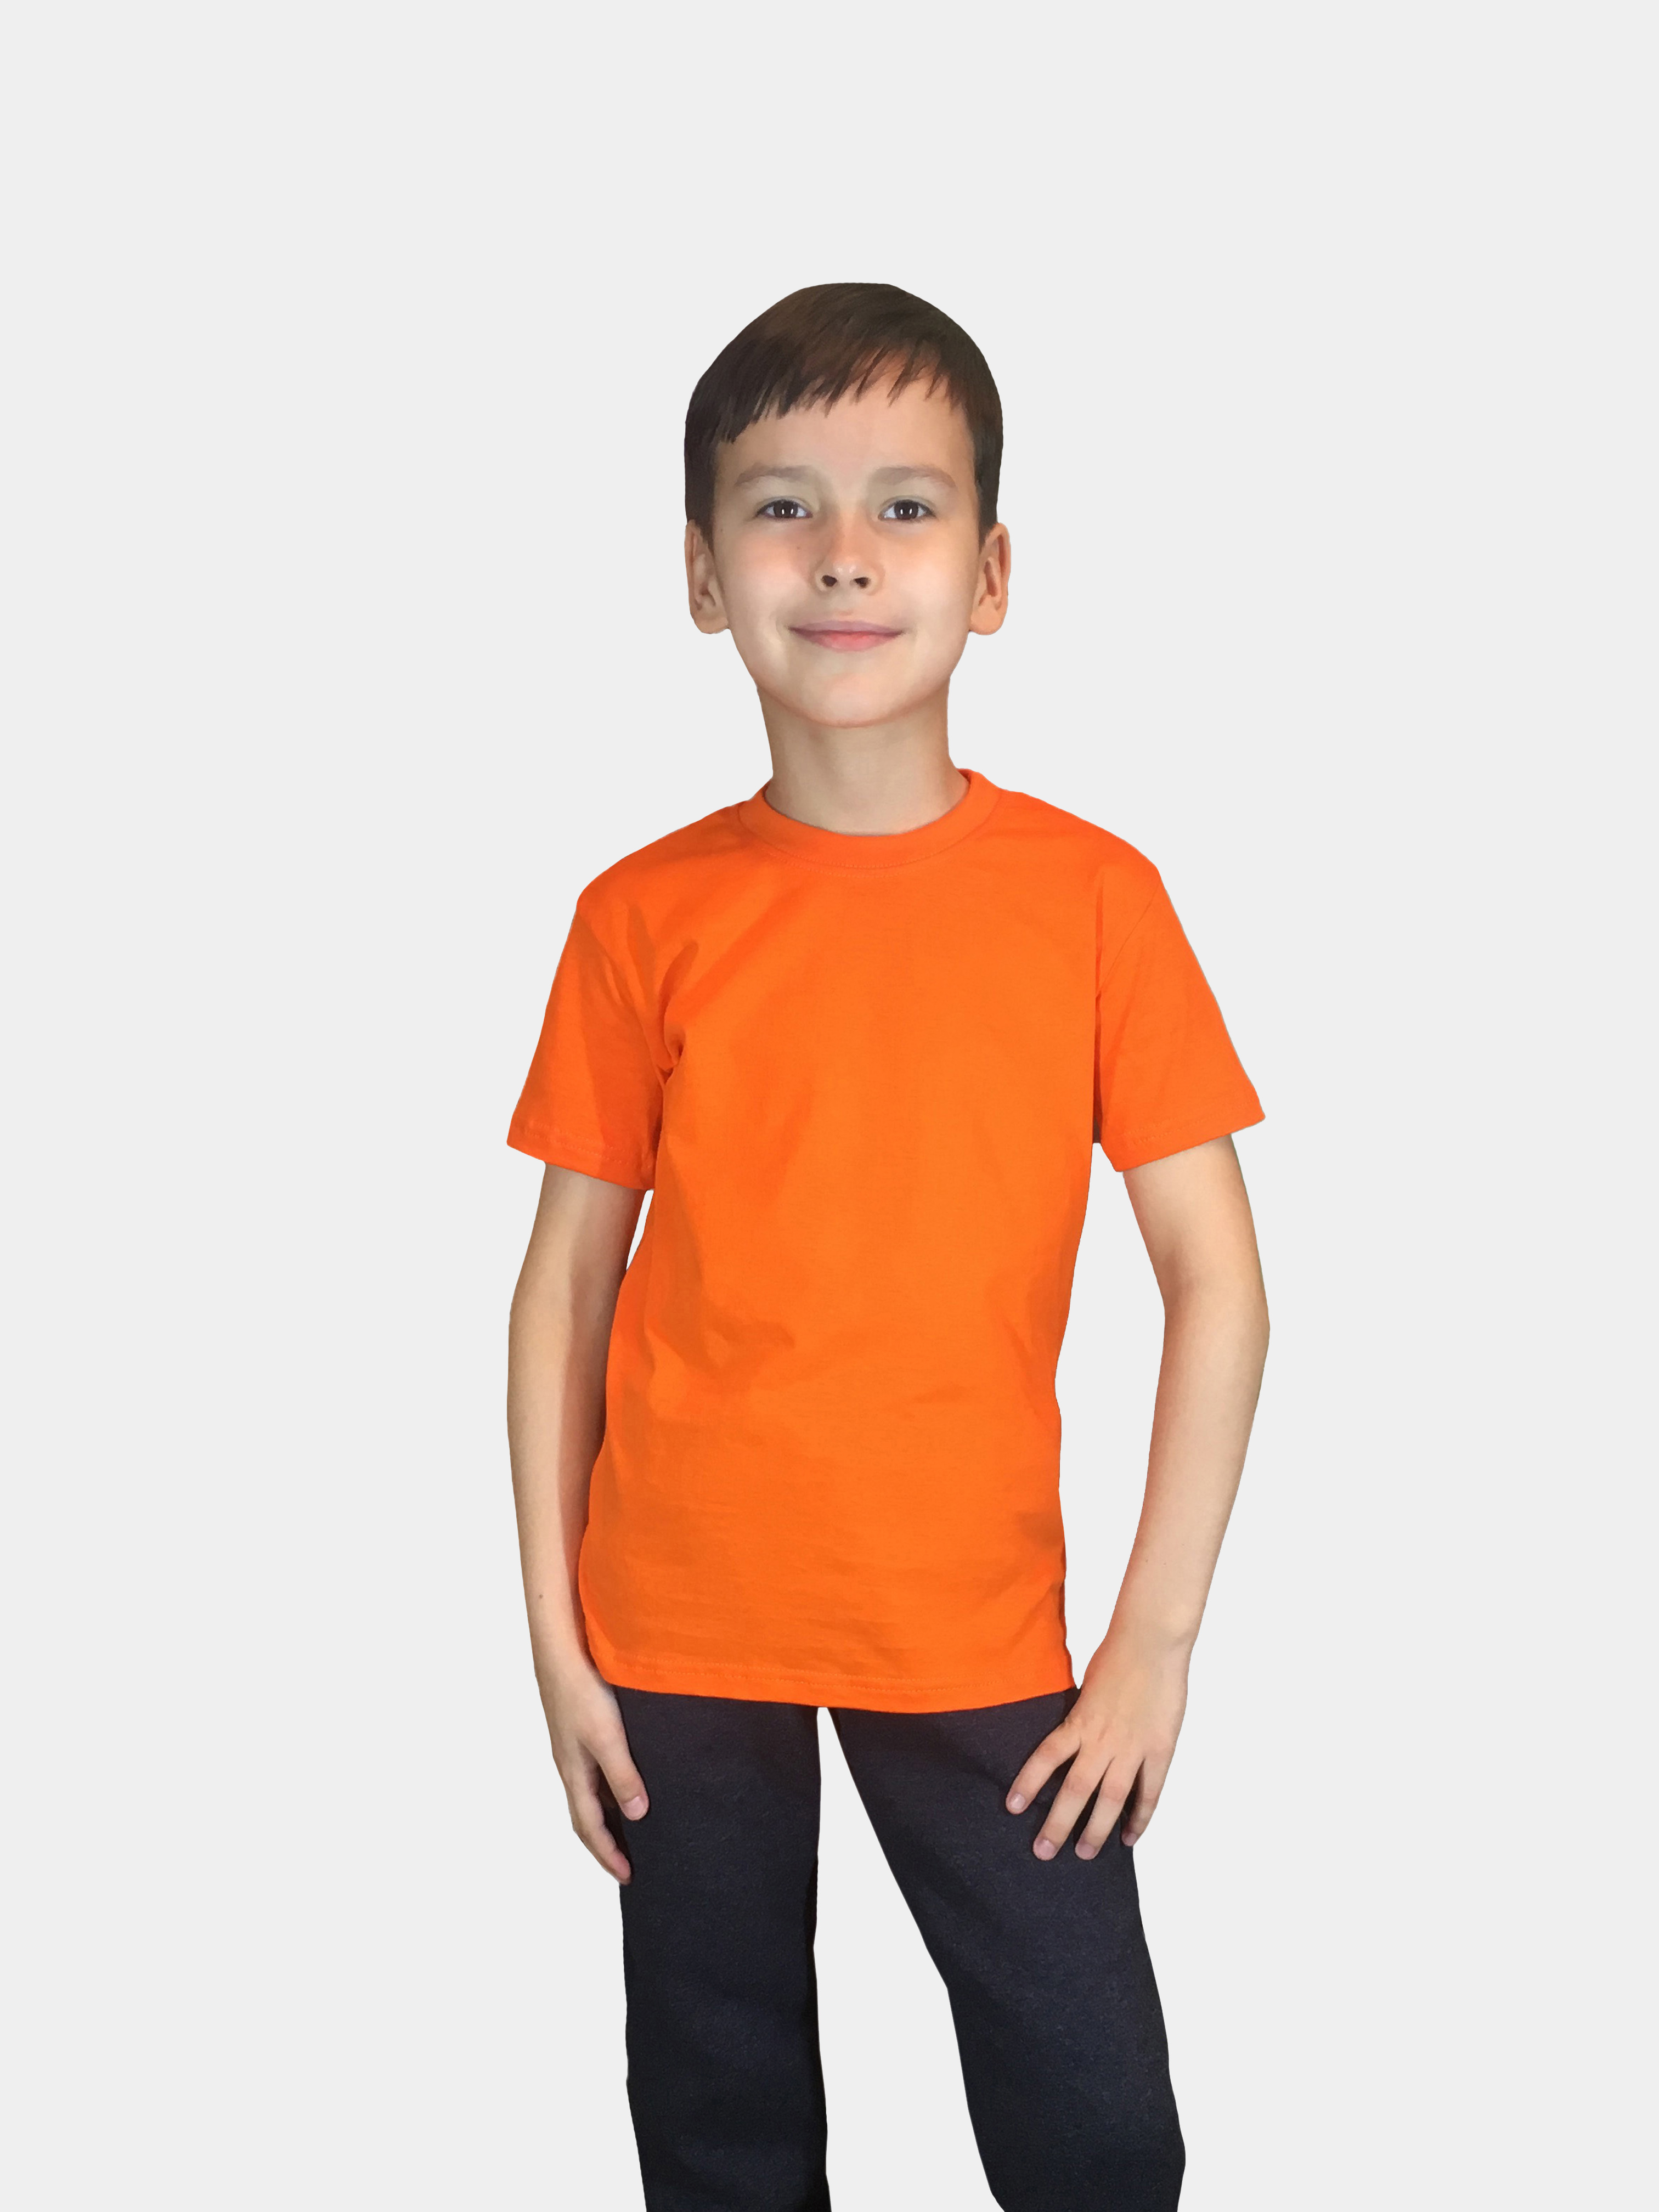 Футболка детская Детрик, оранжевая размер 116, Ф-1-115